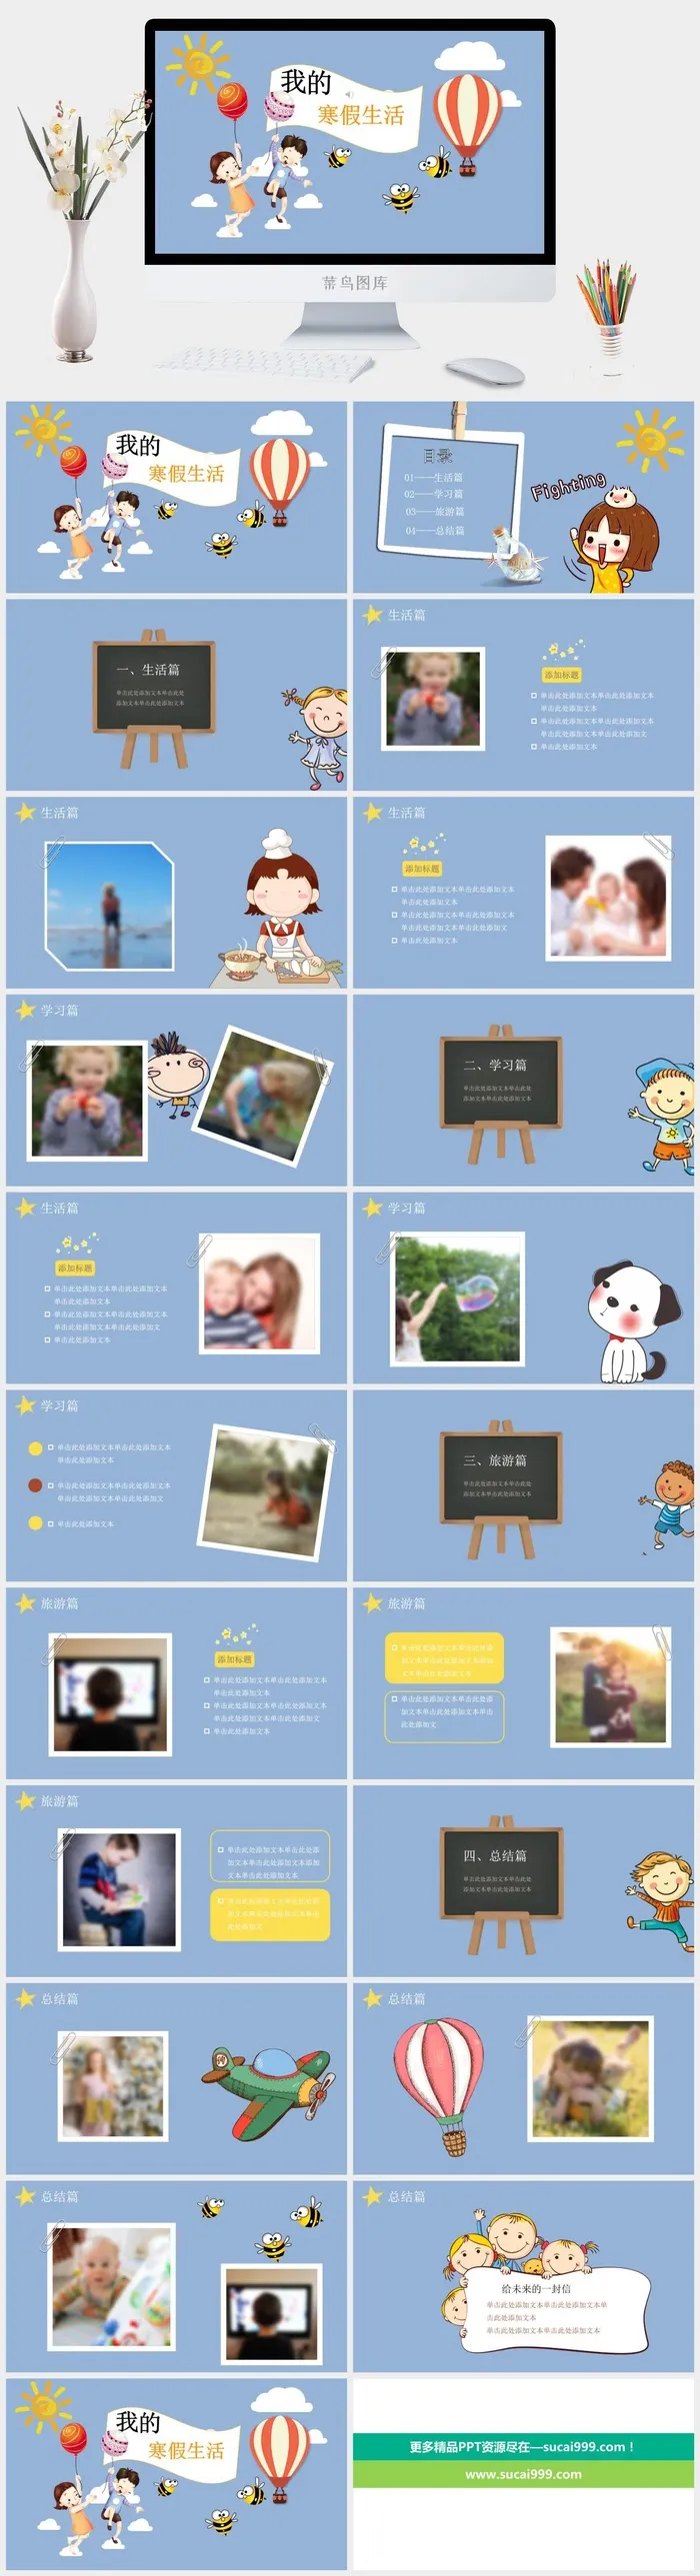 寒假暑假期生活PPT模板可爱儿童幼儿园小学生电子相册旅行动态